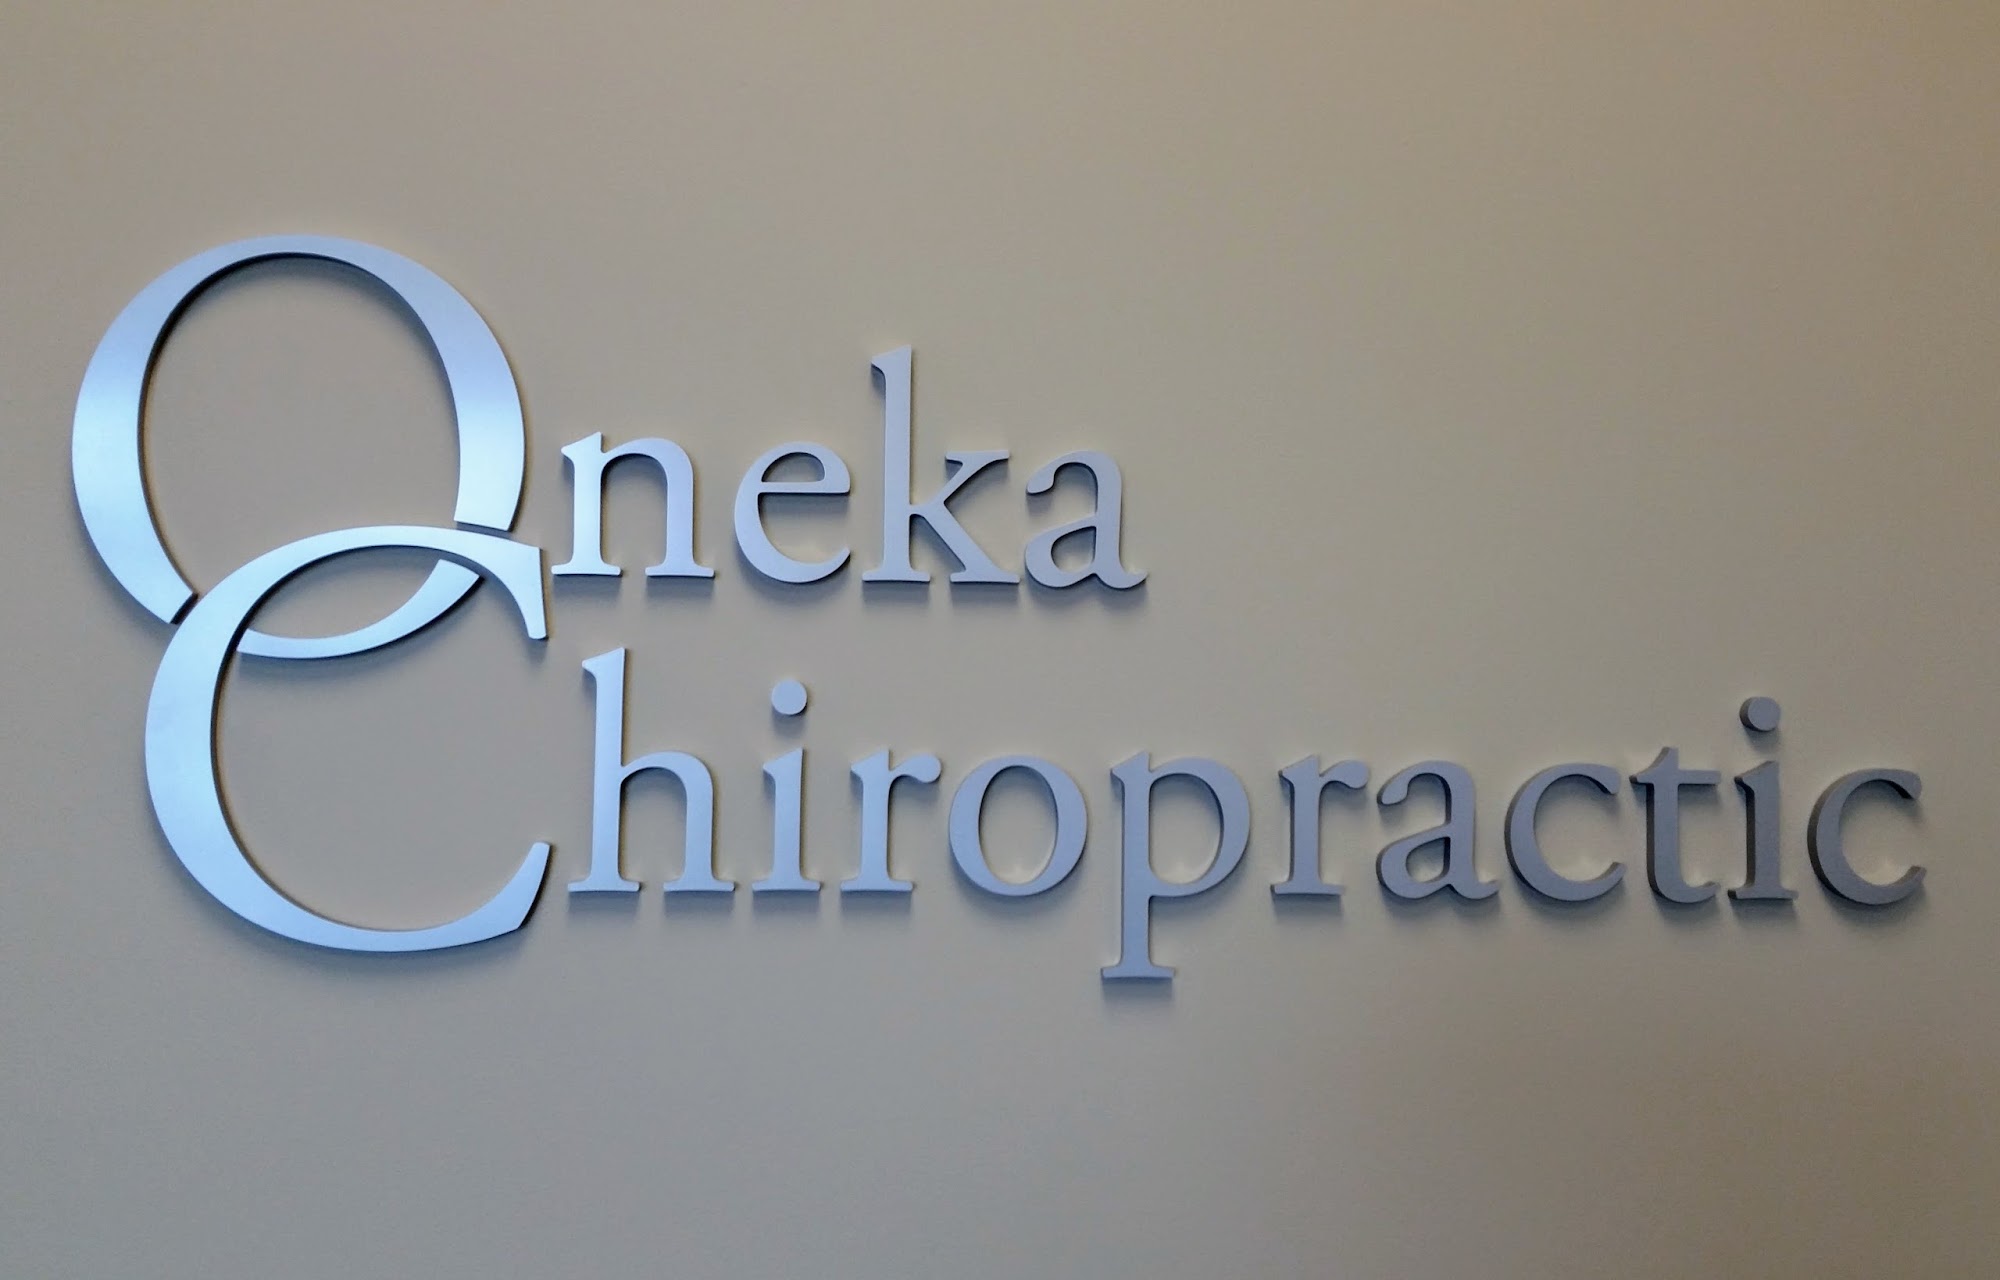 Oneka Chiropractic